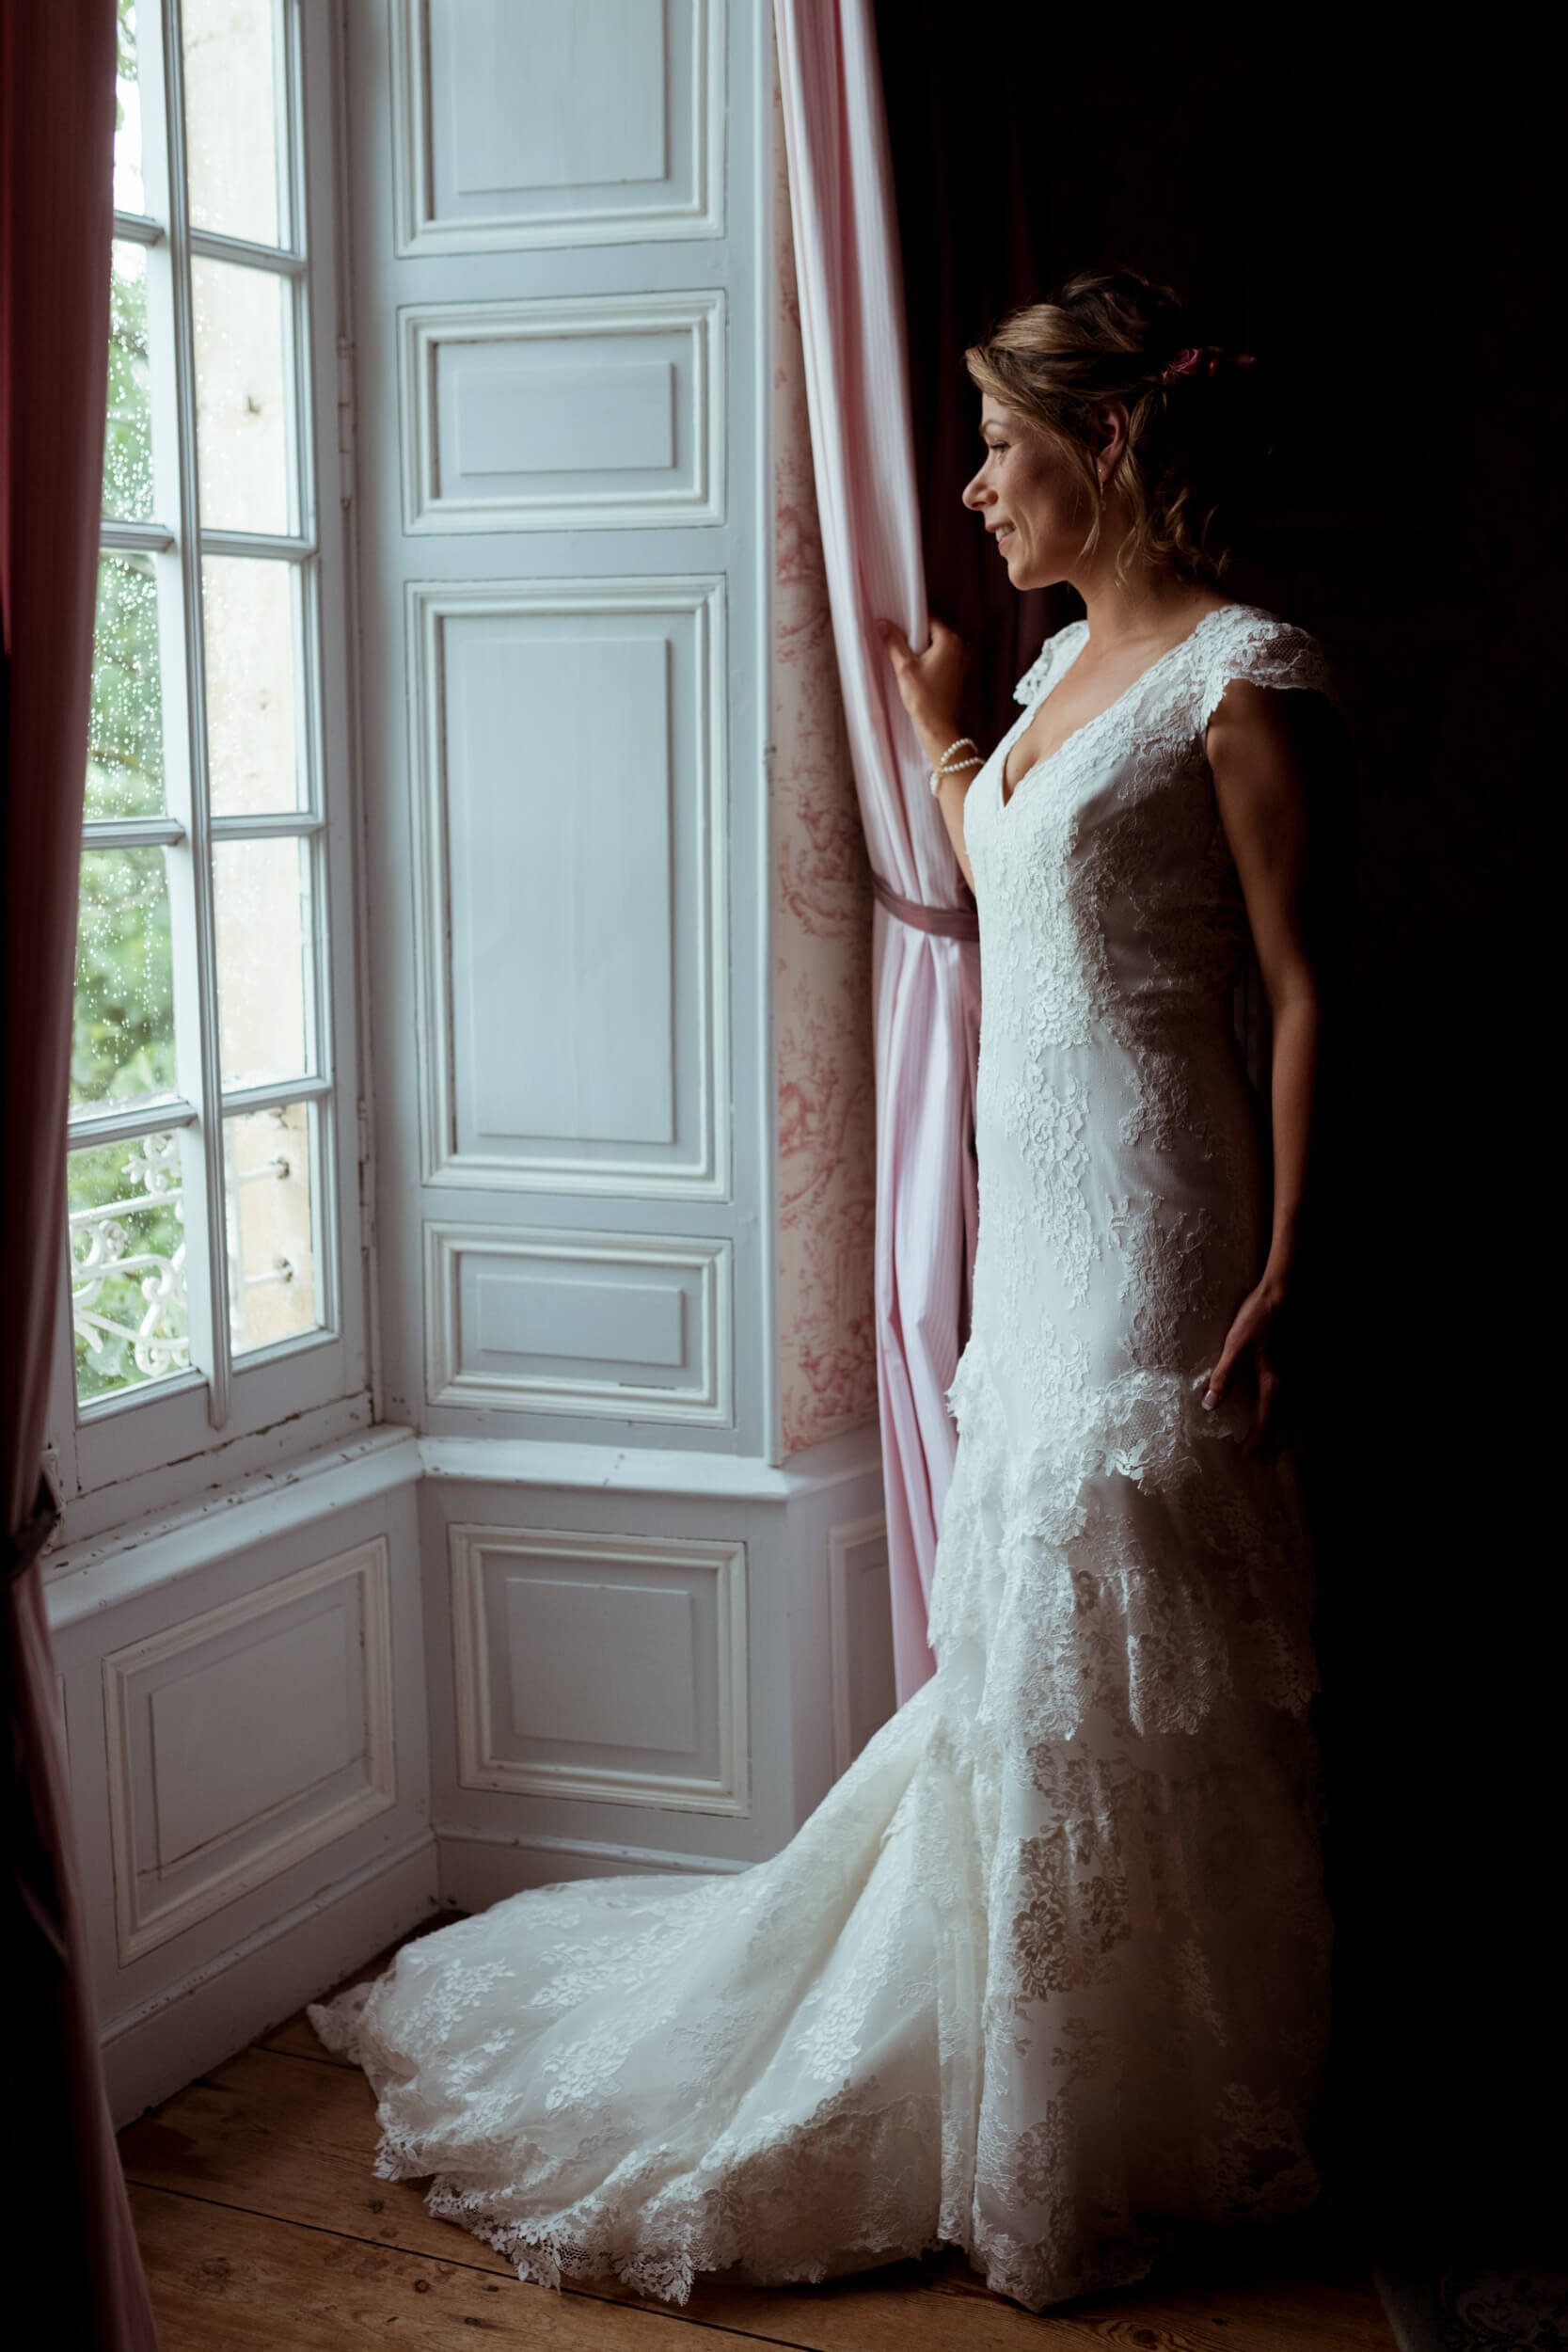 Puyrigaud photographe mariage wedding photographer wedding dress